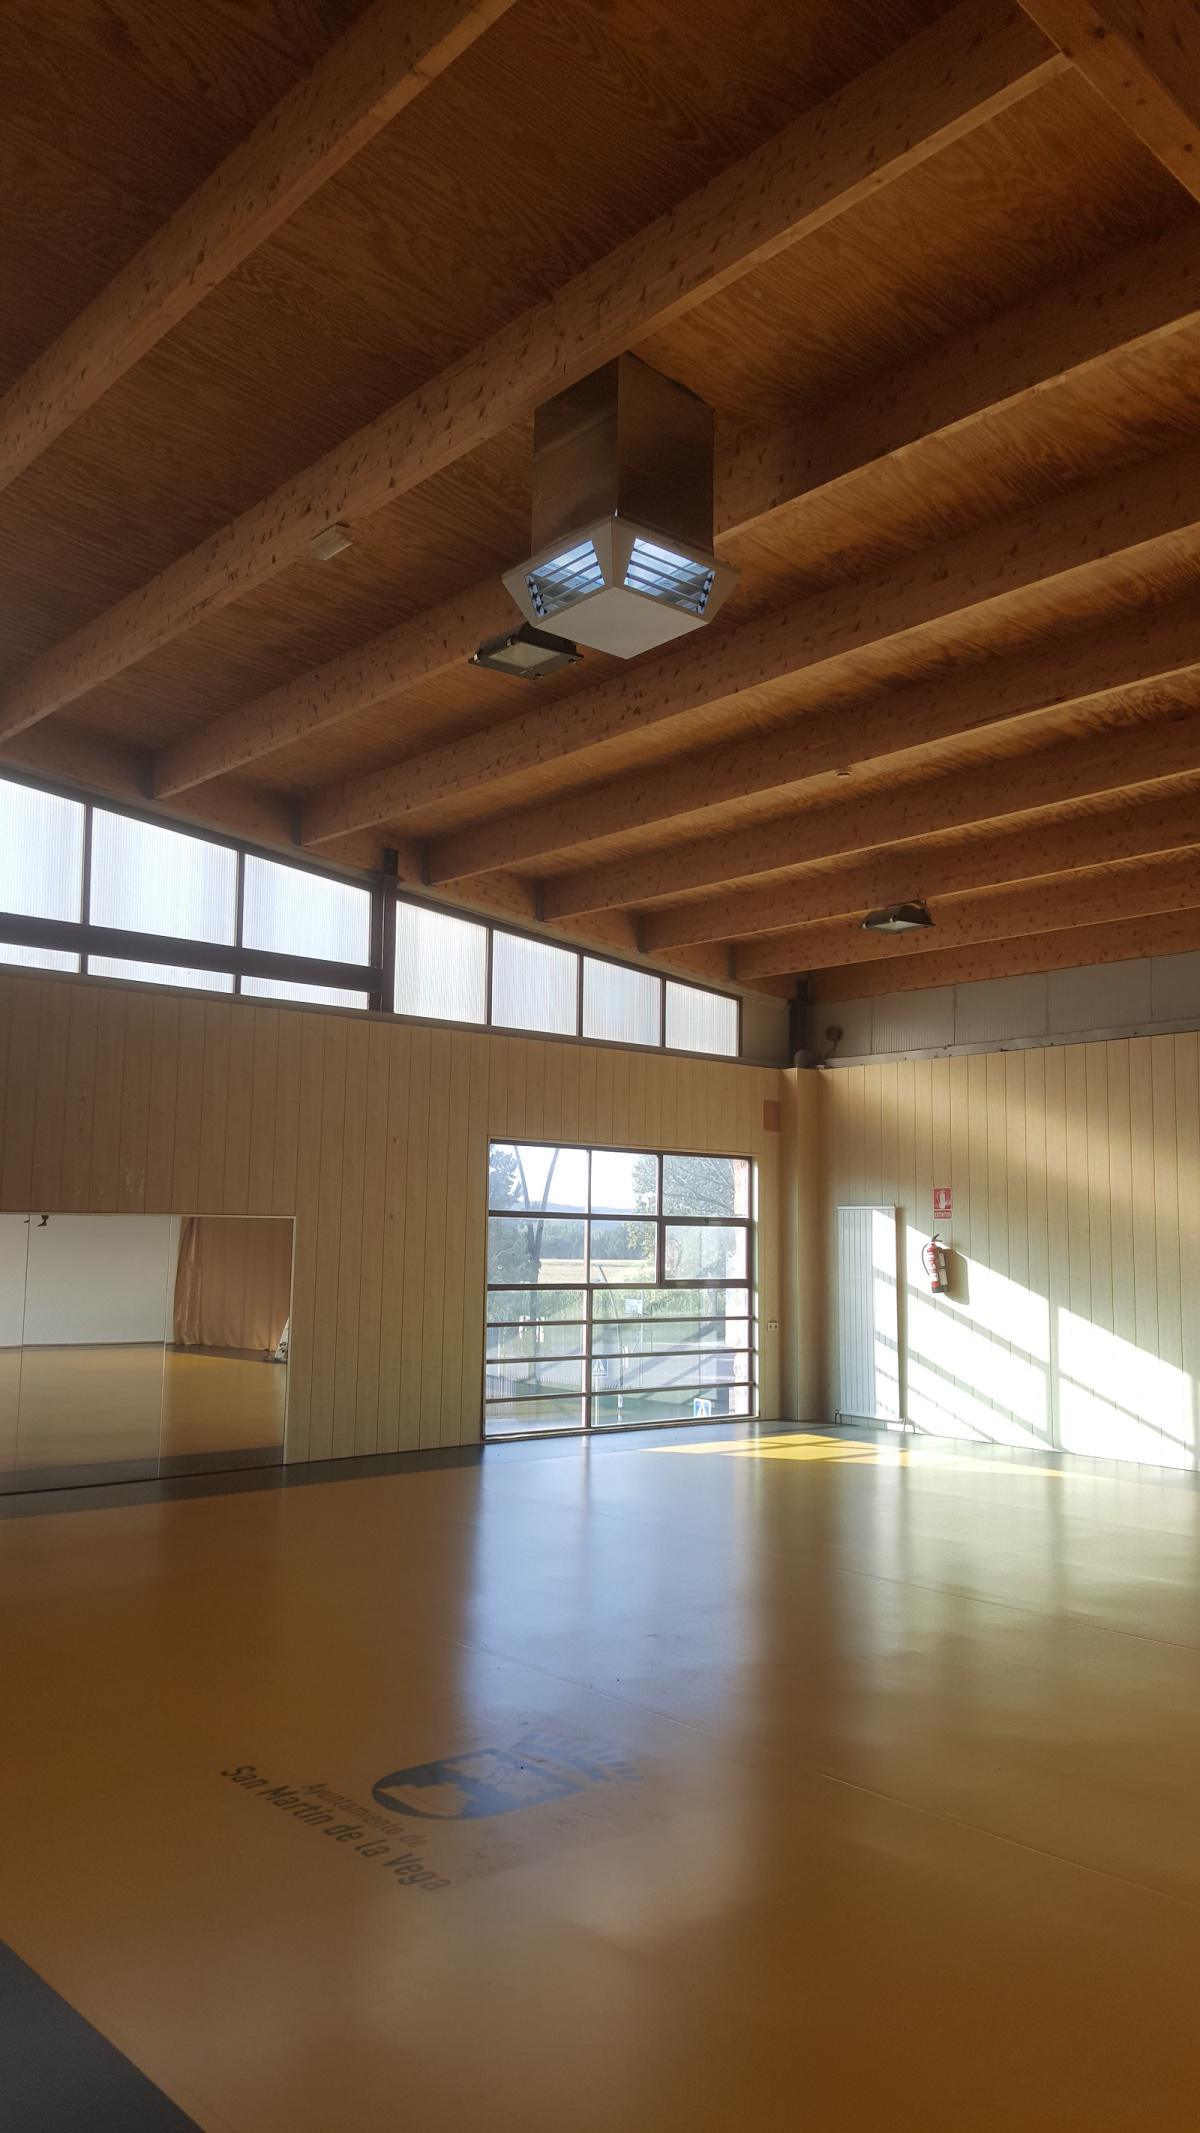 Las salas del Polideportivo Municipal ya cuentan con un nuevo sistema de climatización